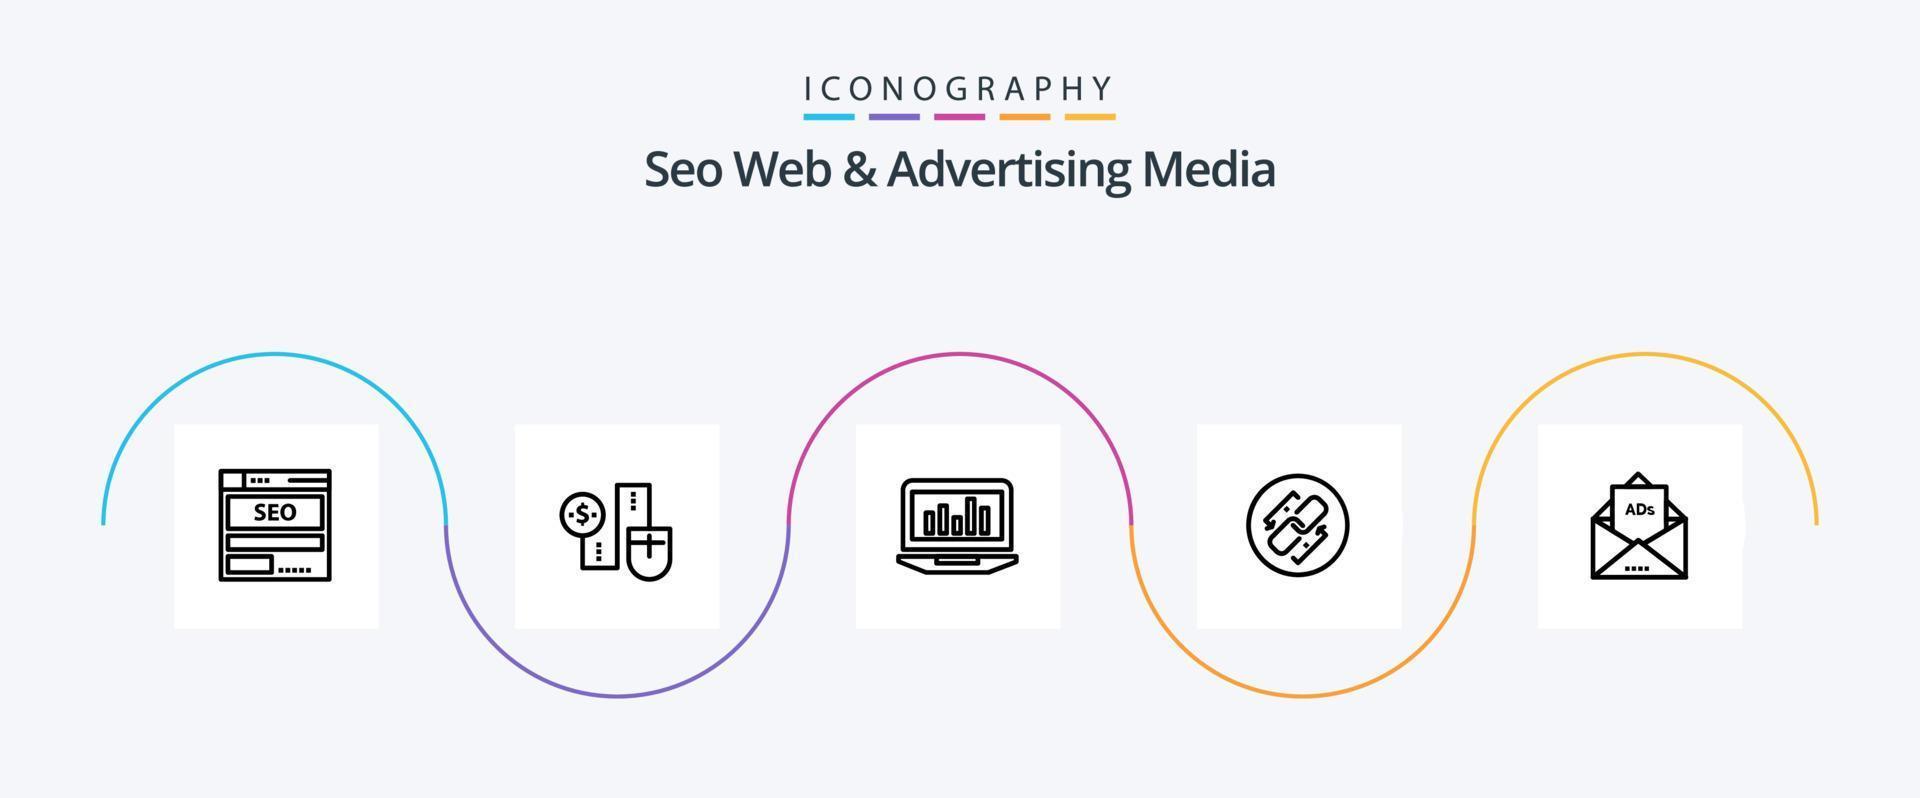 paquete de iconos de la línea 5 de medios publicitarios y web seo, incluida la cadena. Estadísticas. dinero. supervisión. grafico vector